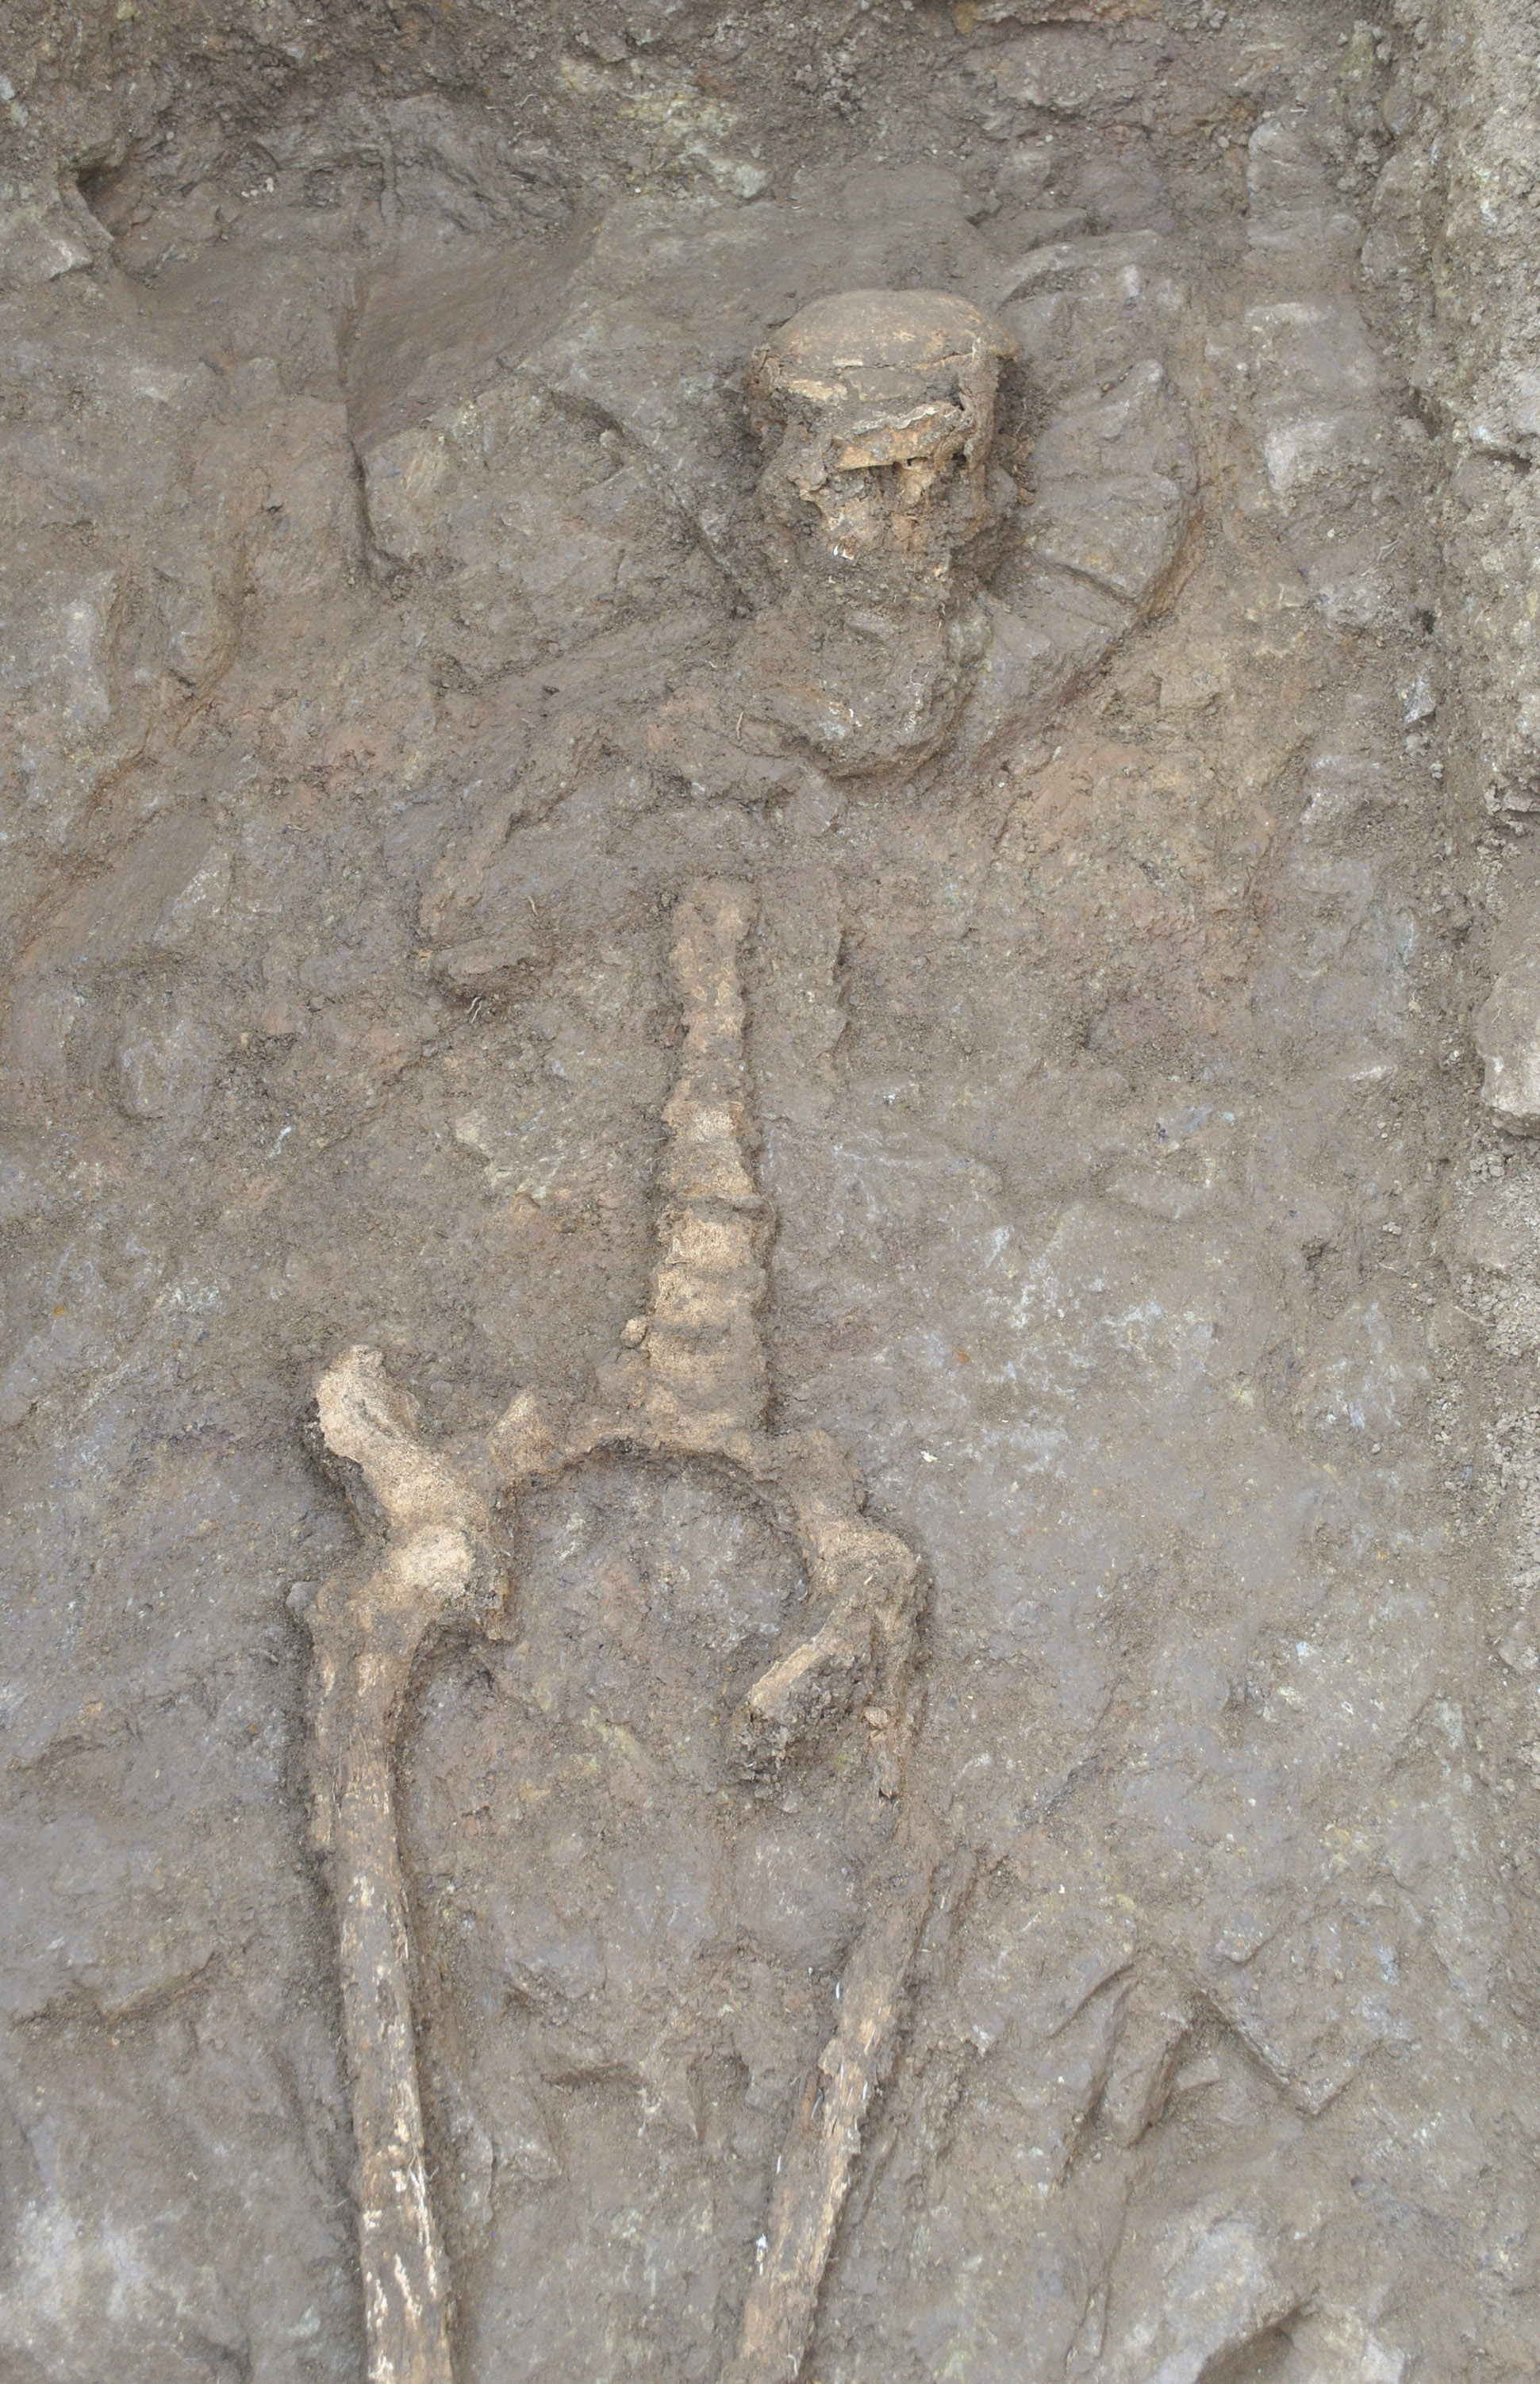 Arheolozi su 2015. godine na arheološkom nalazištu Bojna – Brekinjova Kosa koje se nalazi na području Grada Gline u Sisačko-moslavačkoj županiji, otkrili stare grobove čiji bi sadržaj mogao pružiti sasvim novu perspektivu na ranu srednjovjekovnu povijest Hrvatske. Naime, u ljeto te godine na lokaciji Brekinjova kosa pronađeno je 37 grobova koji datiraju u period između 7. i 9. stoljeća. Svi grobovi bili su bogato opremljeni, ali jedna grobnica čuvala je blago koje je sugeriralo da je tamo pokopan izuzetno moćan i bogat čovjek, možda rani hrvatski knez. Na slici su kosturni ostaci pokojnika sahranjenog u grobu 13